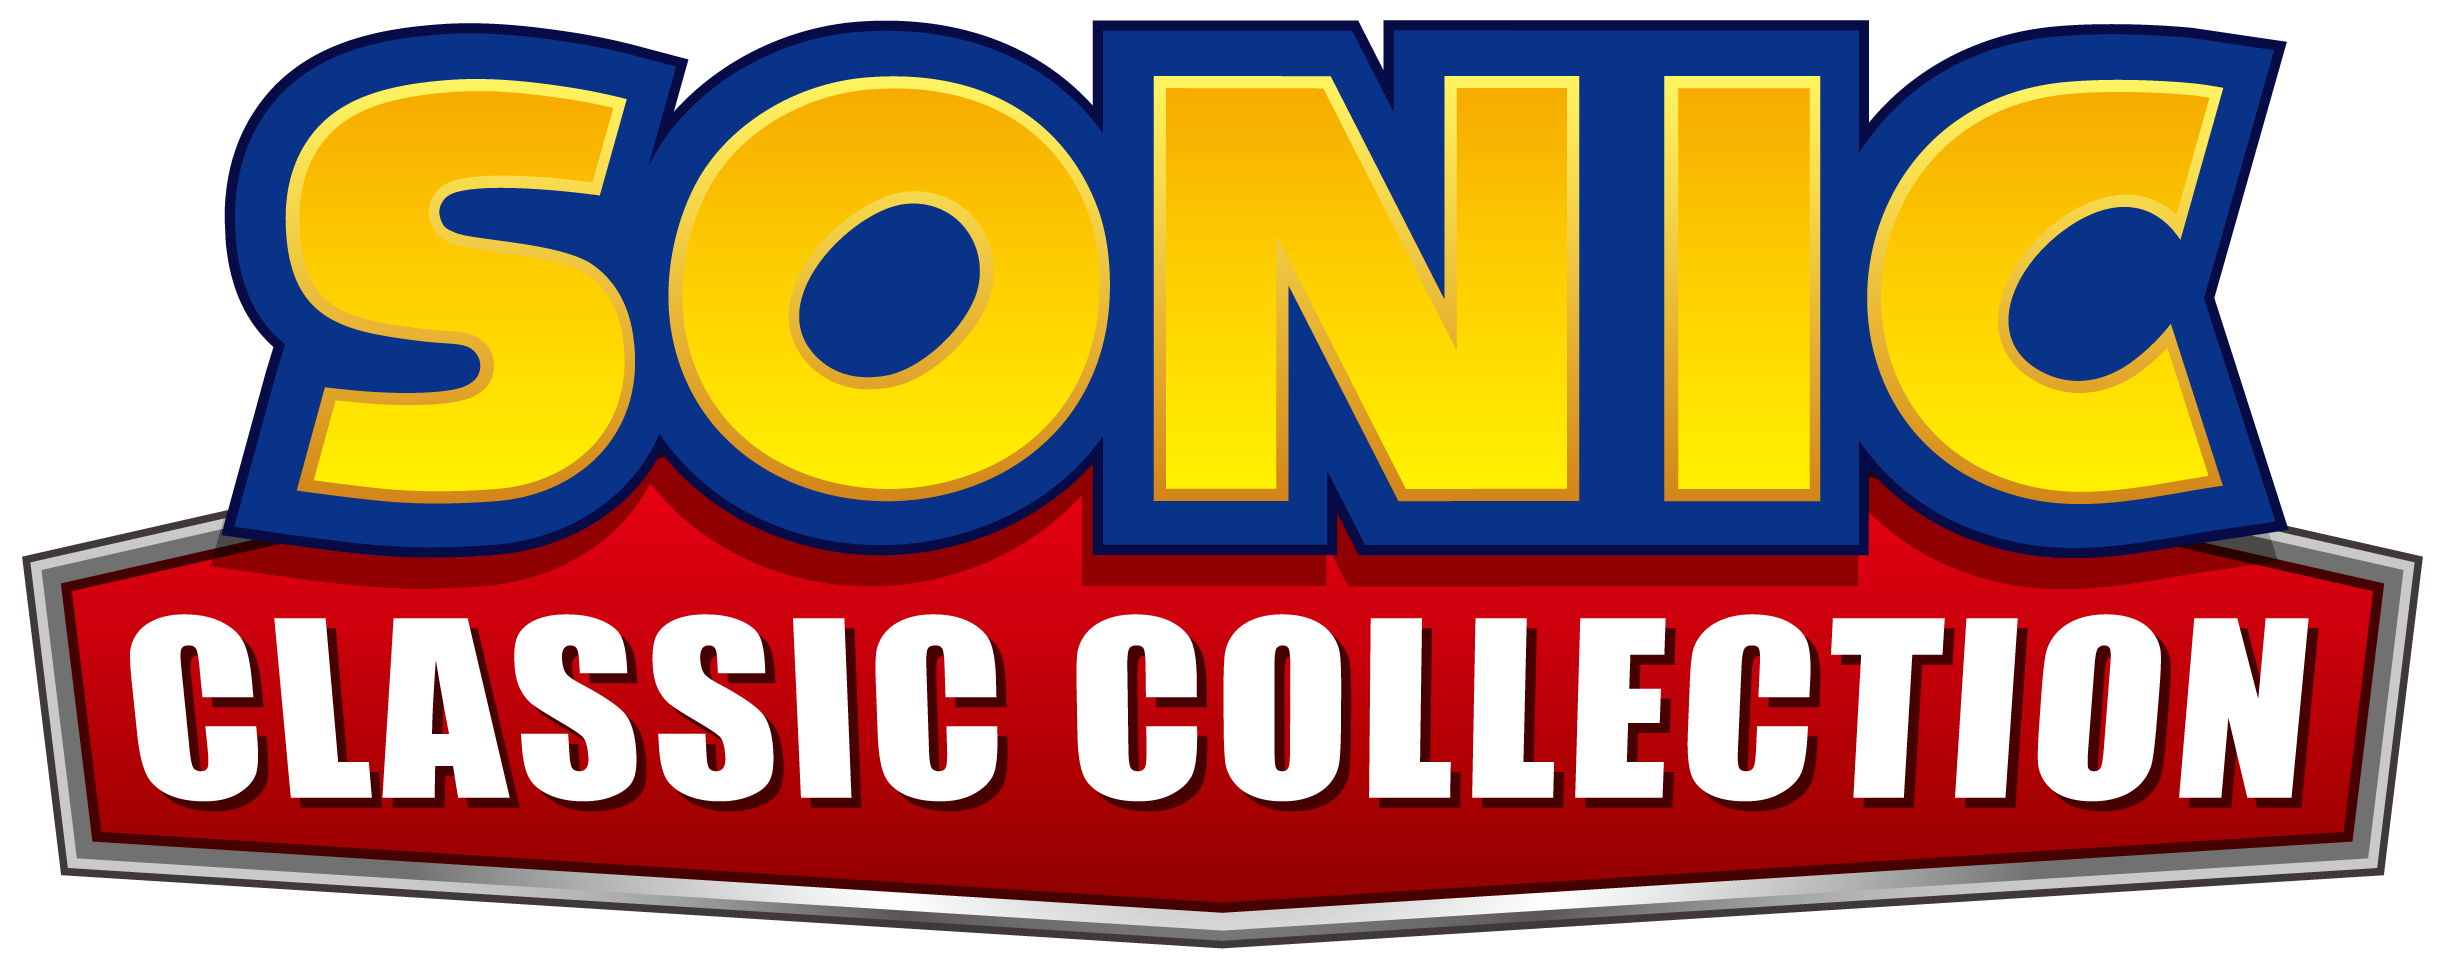 Sonic Classic Collection - Sonic Classic Collection Logo (2445x969), Png Download